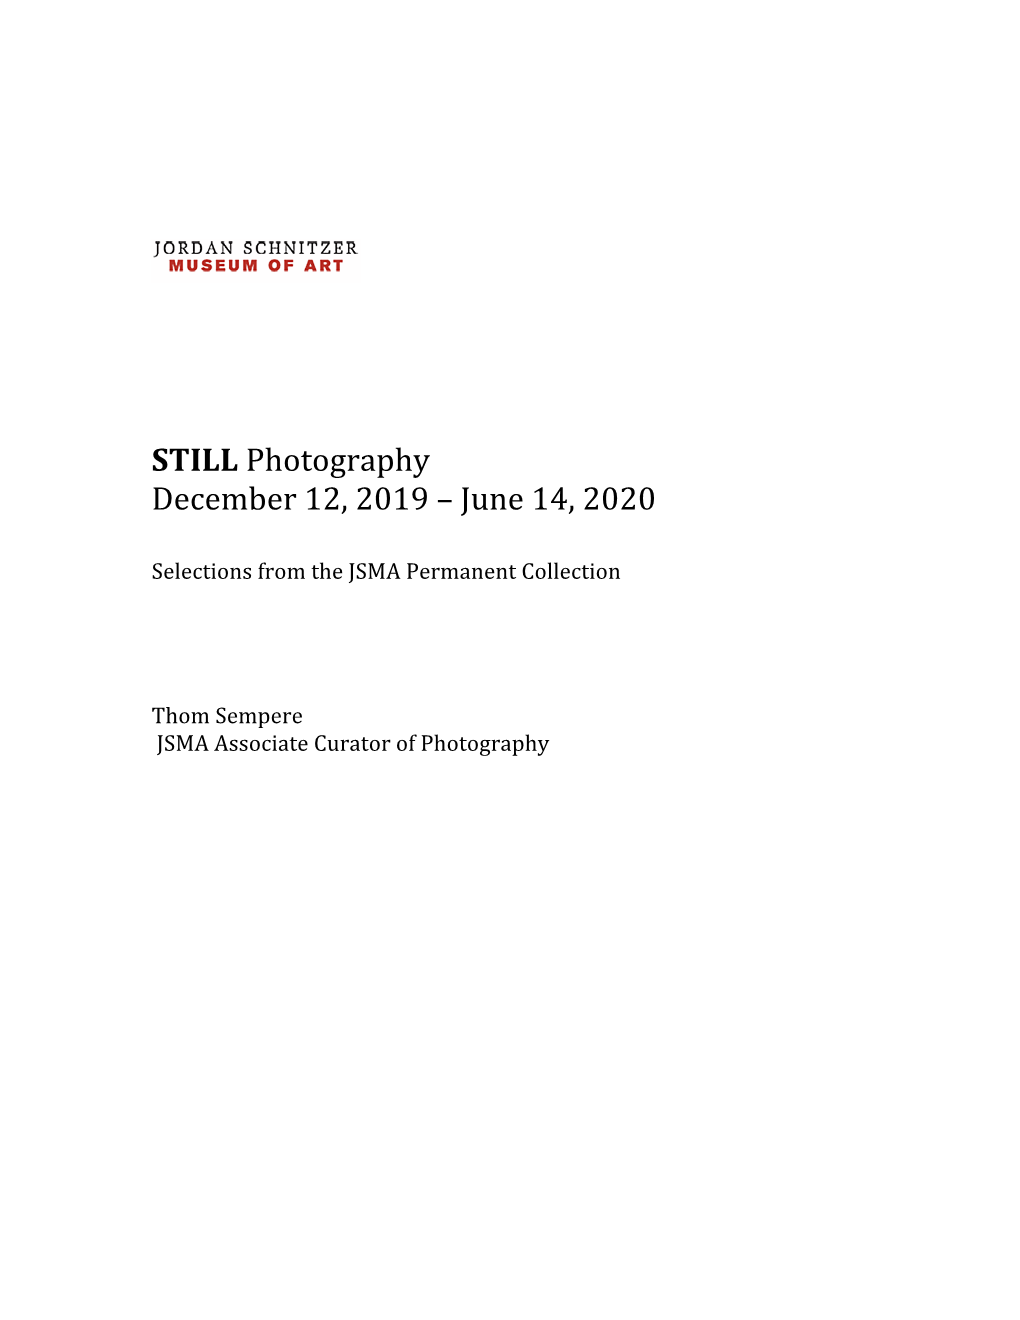 STILL Photography December 12, 2019 – June 14, 2020